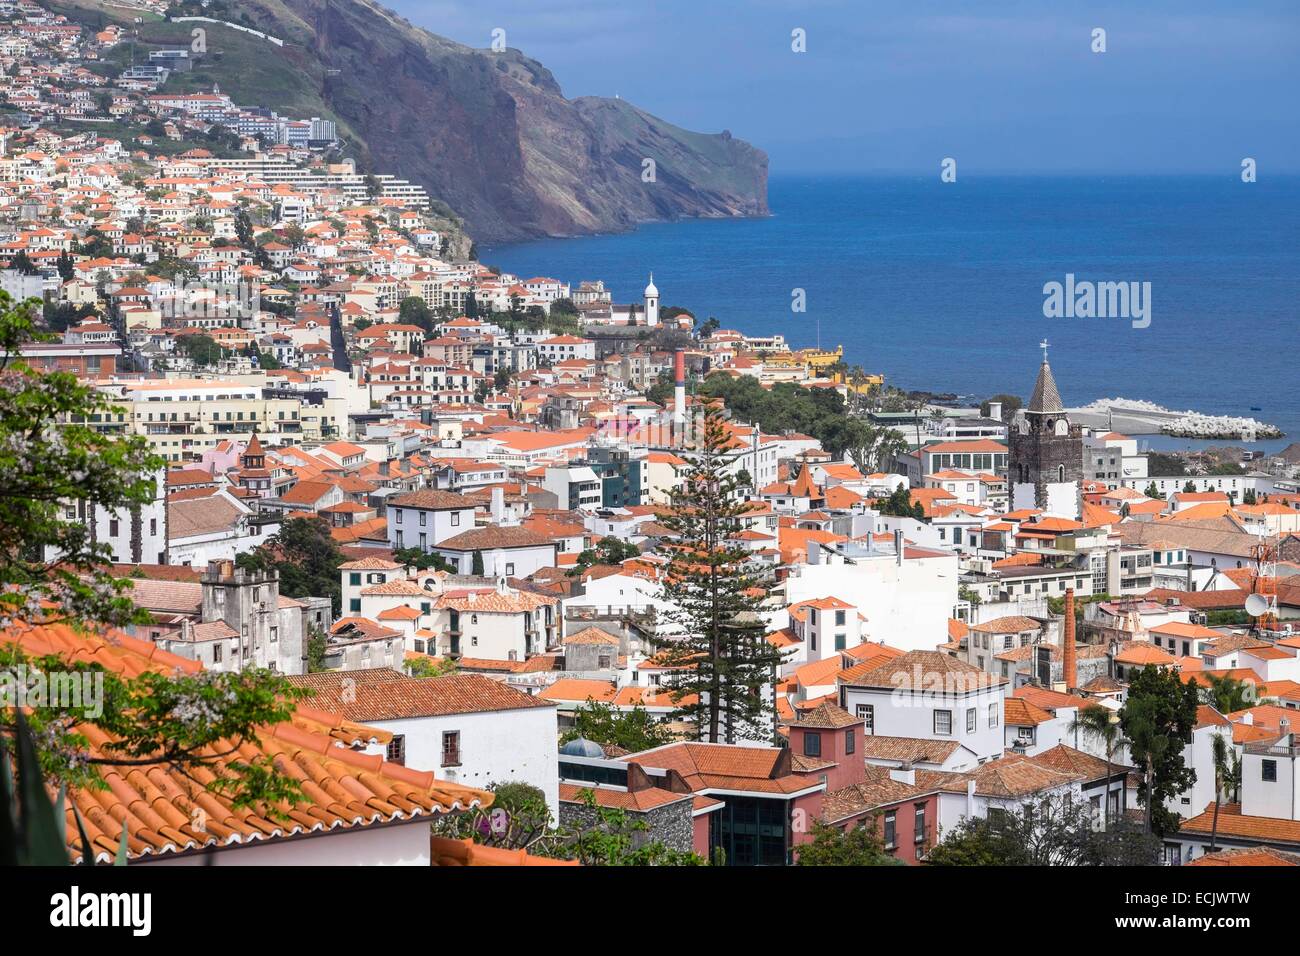 Portugal, la isla de Madeira, Funchal, vista panorámica desde el Forte do Pico Foto de stock